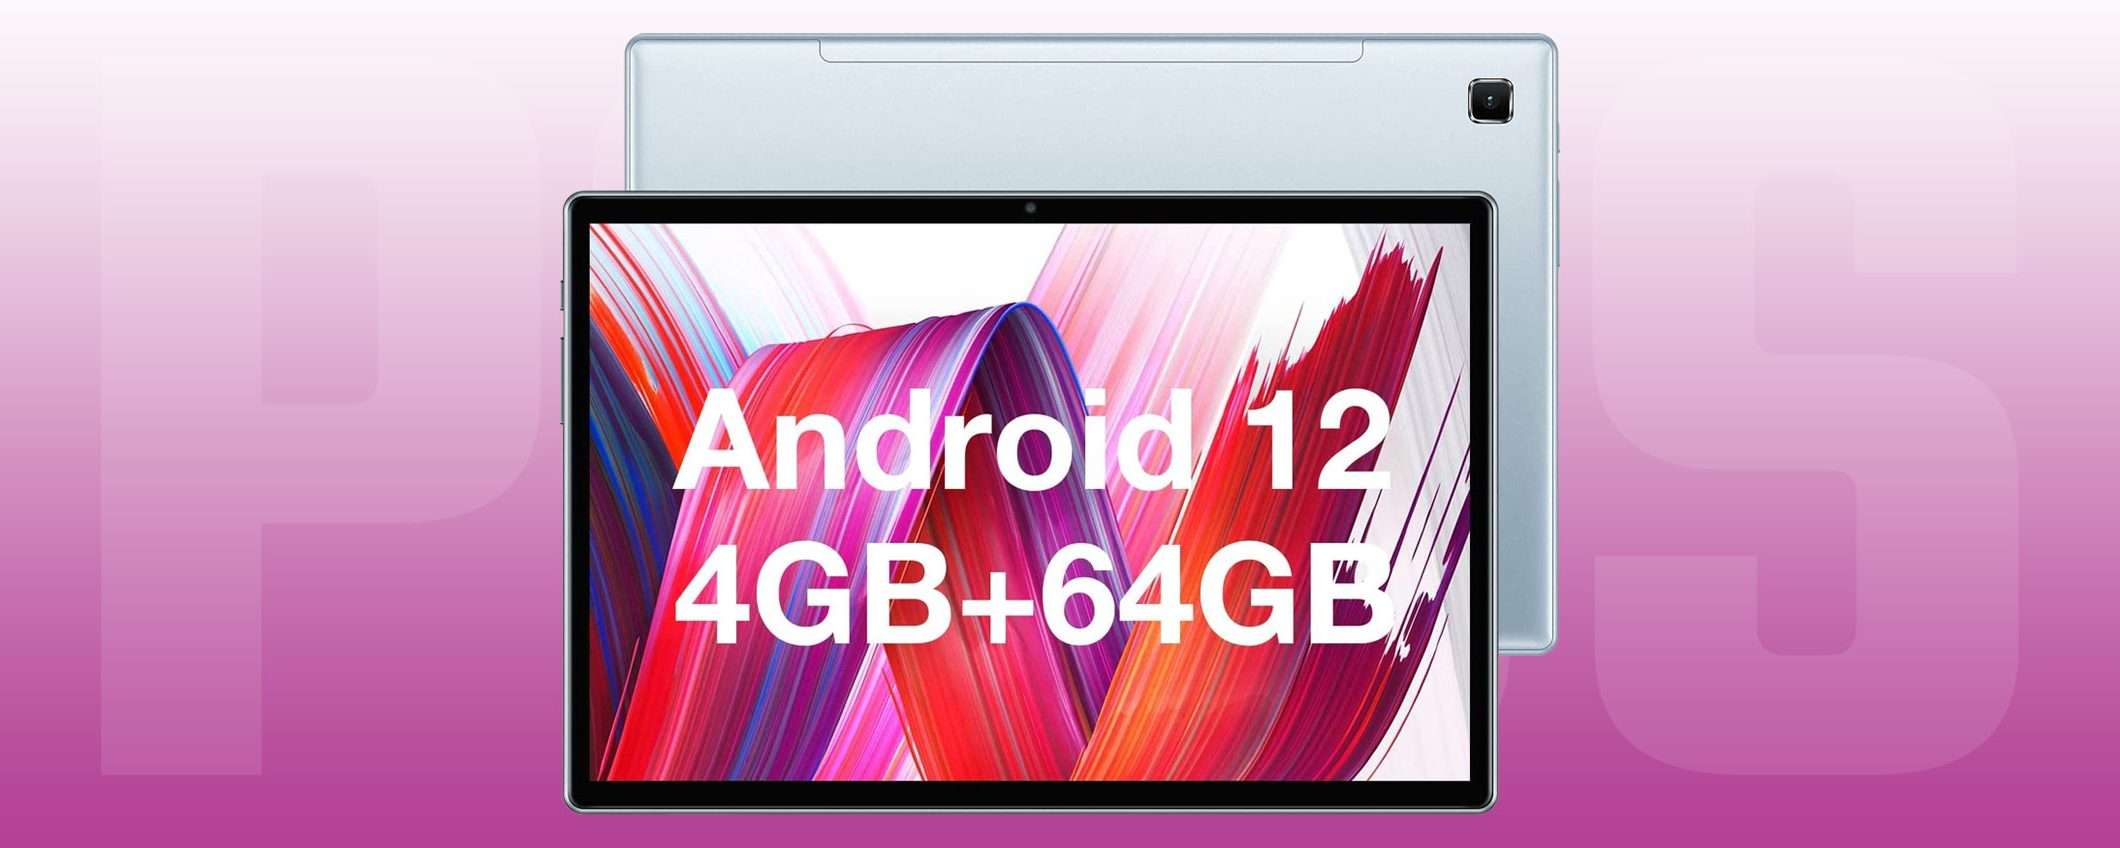 99€ per questo tablet Android: l'affare Teclast